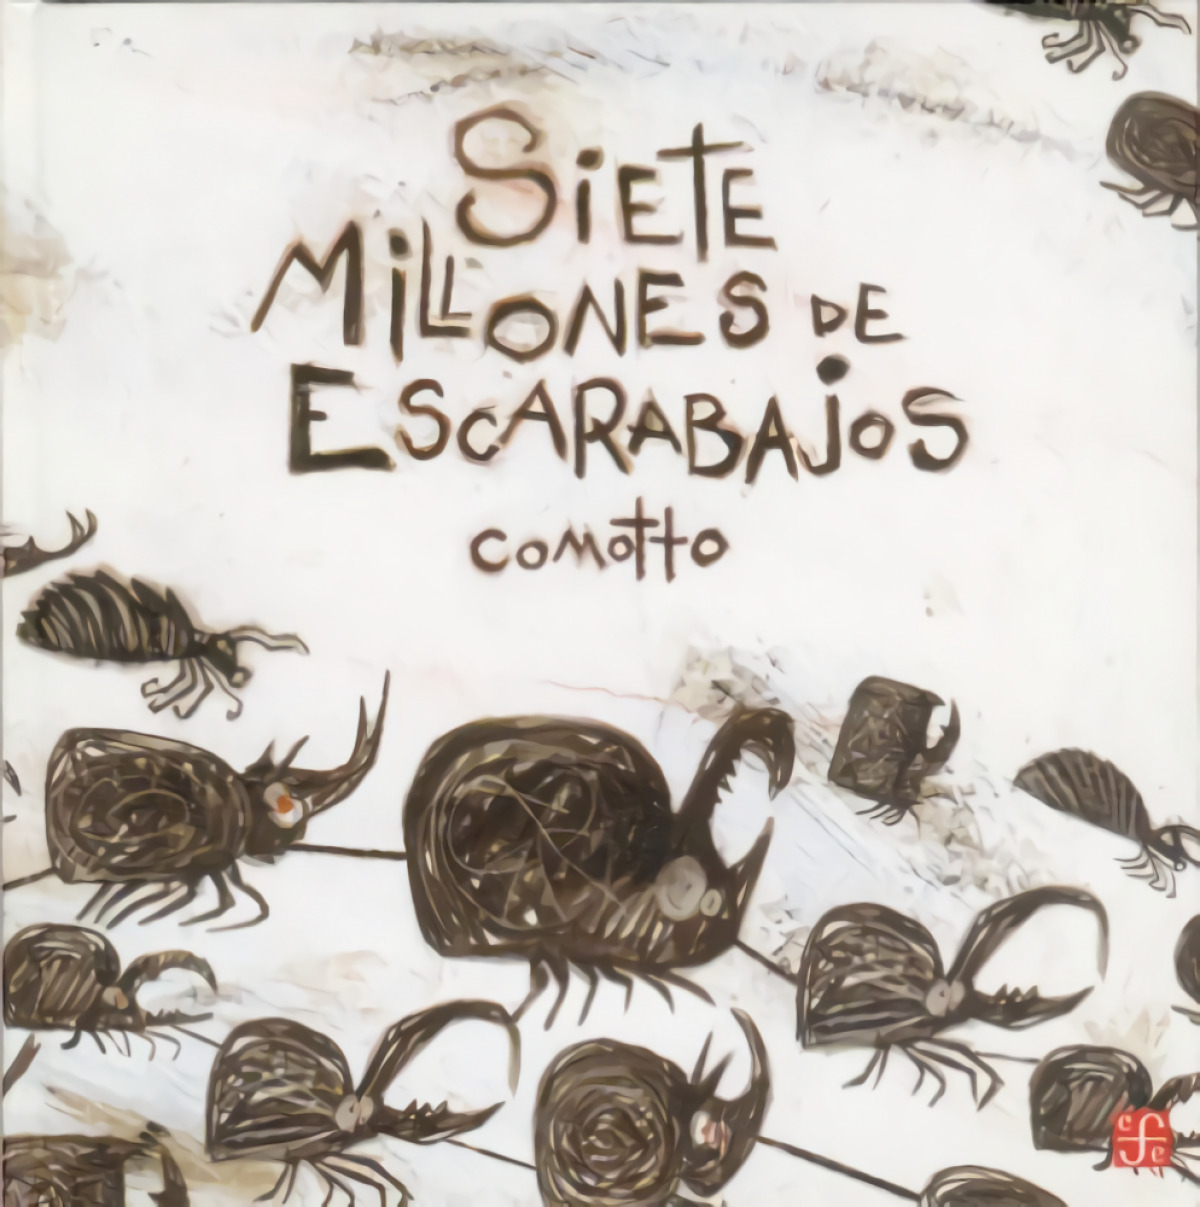 Siete millones de escarabajos - Comotto, Agustin